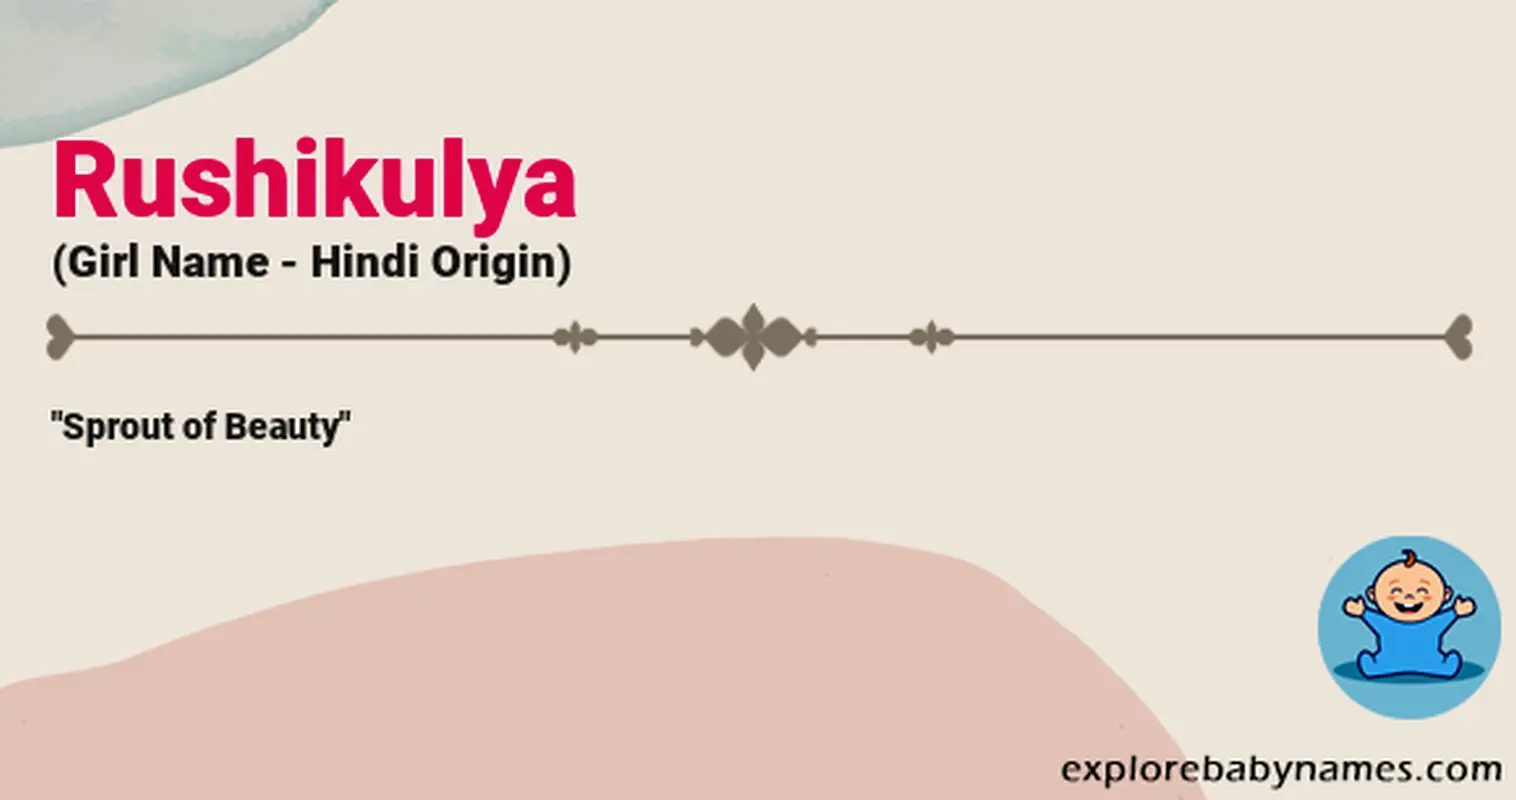 Meaning of Rushikulya